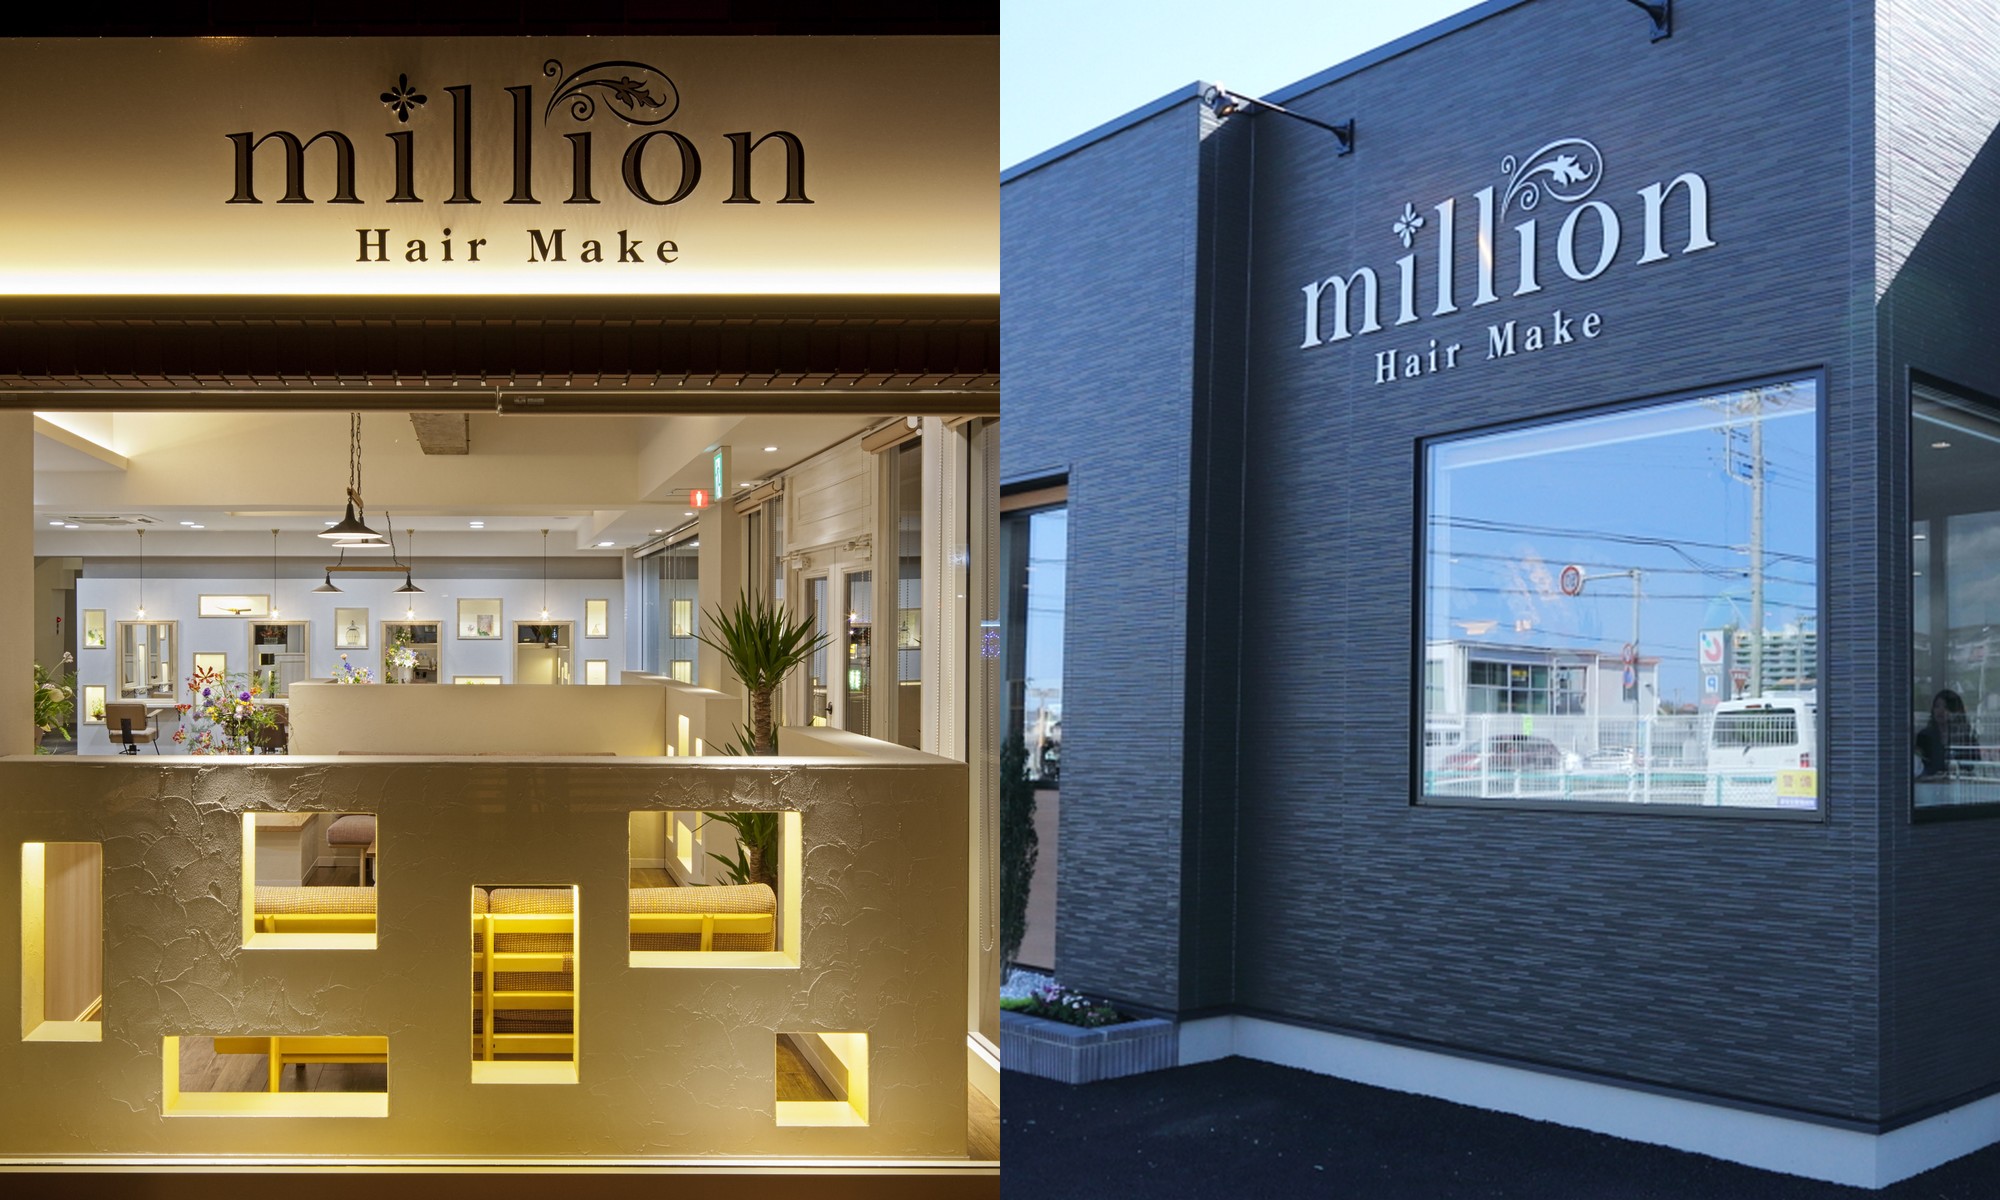 Hair Make Million ミリオン 日立市の美容院